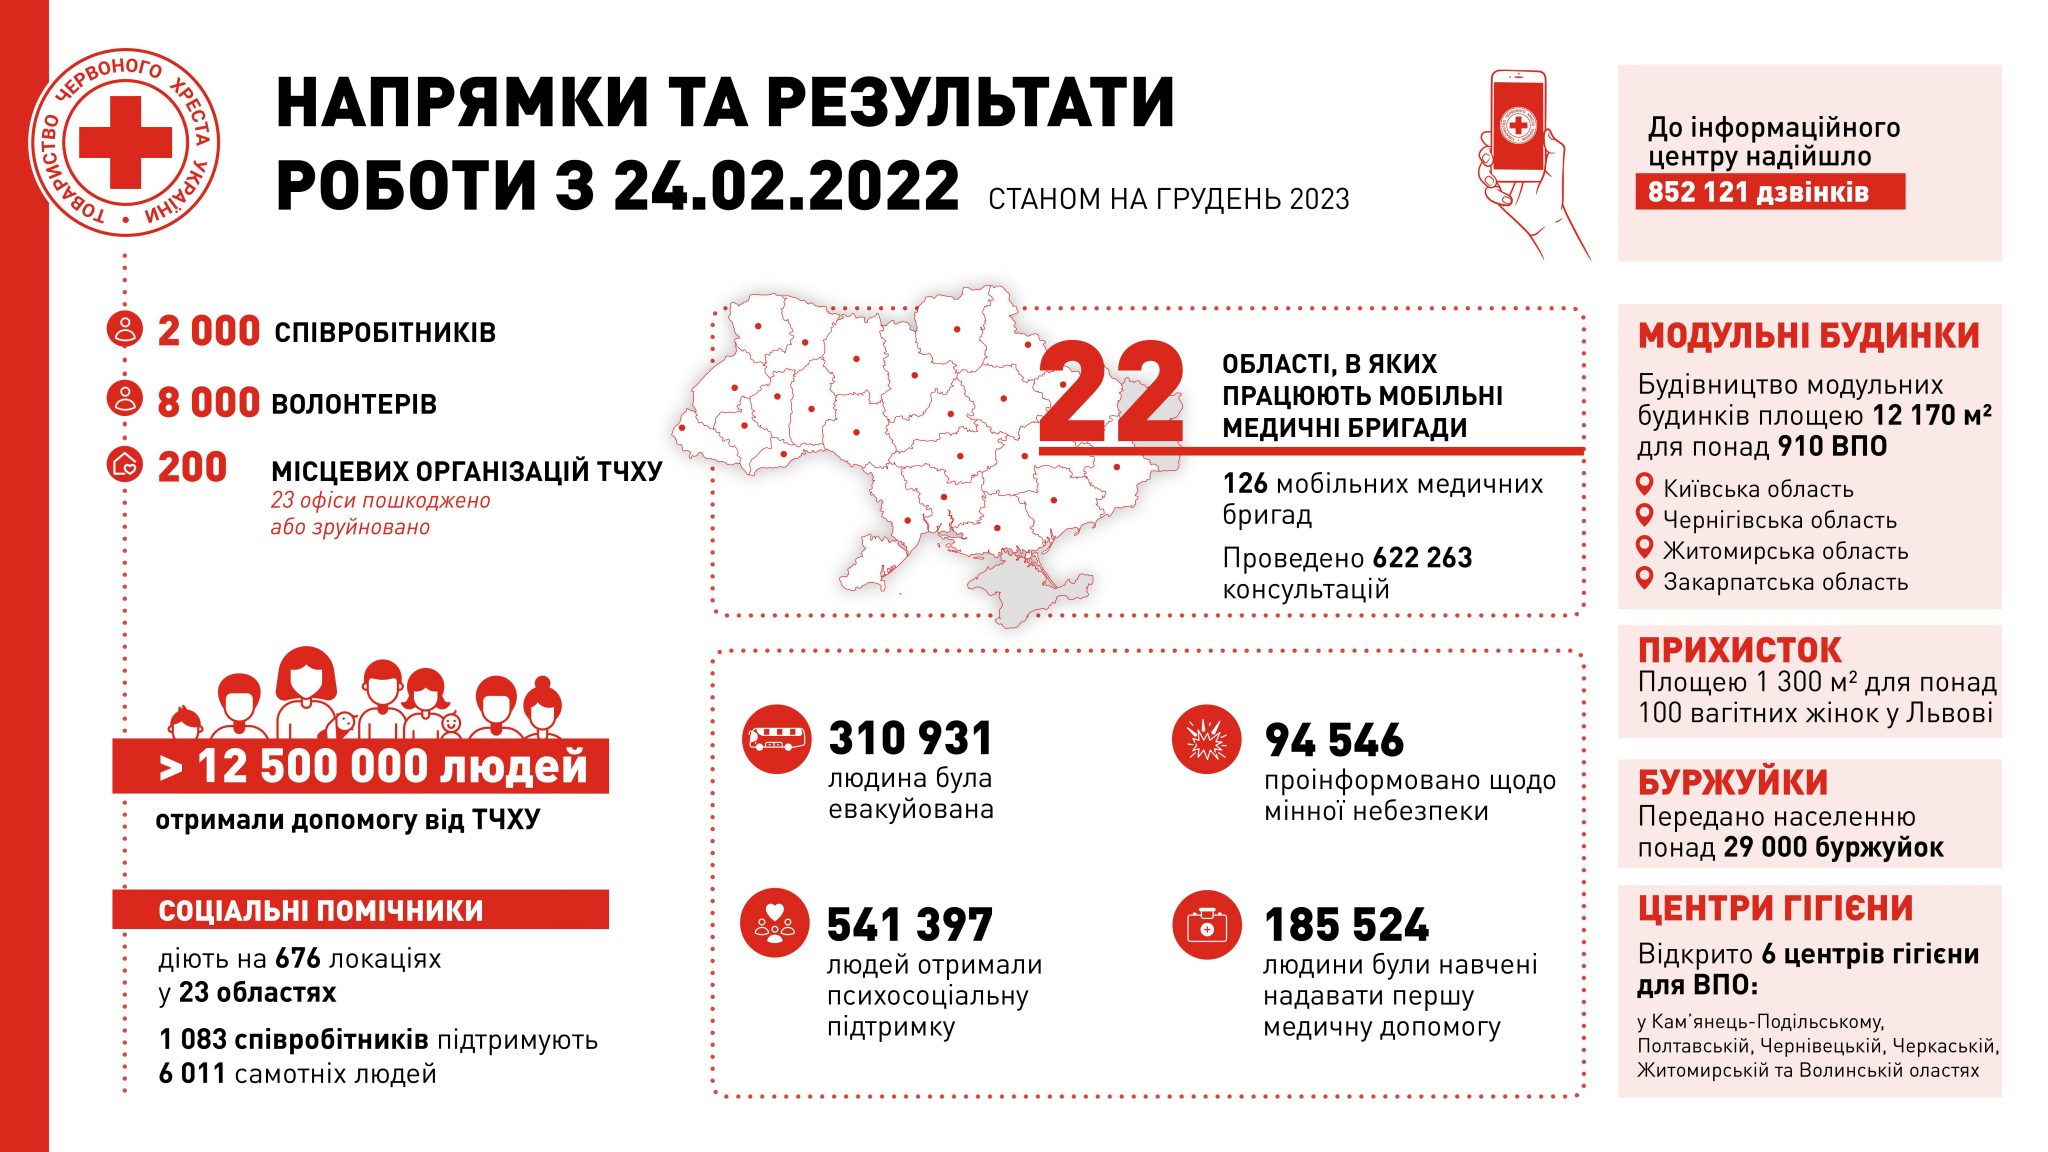 Червоний хрест України підсумки роботи у 2023 році